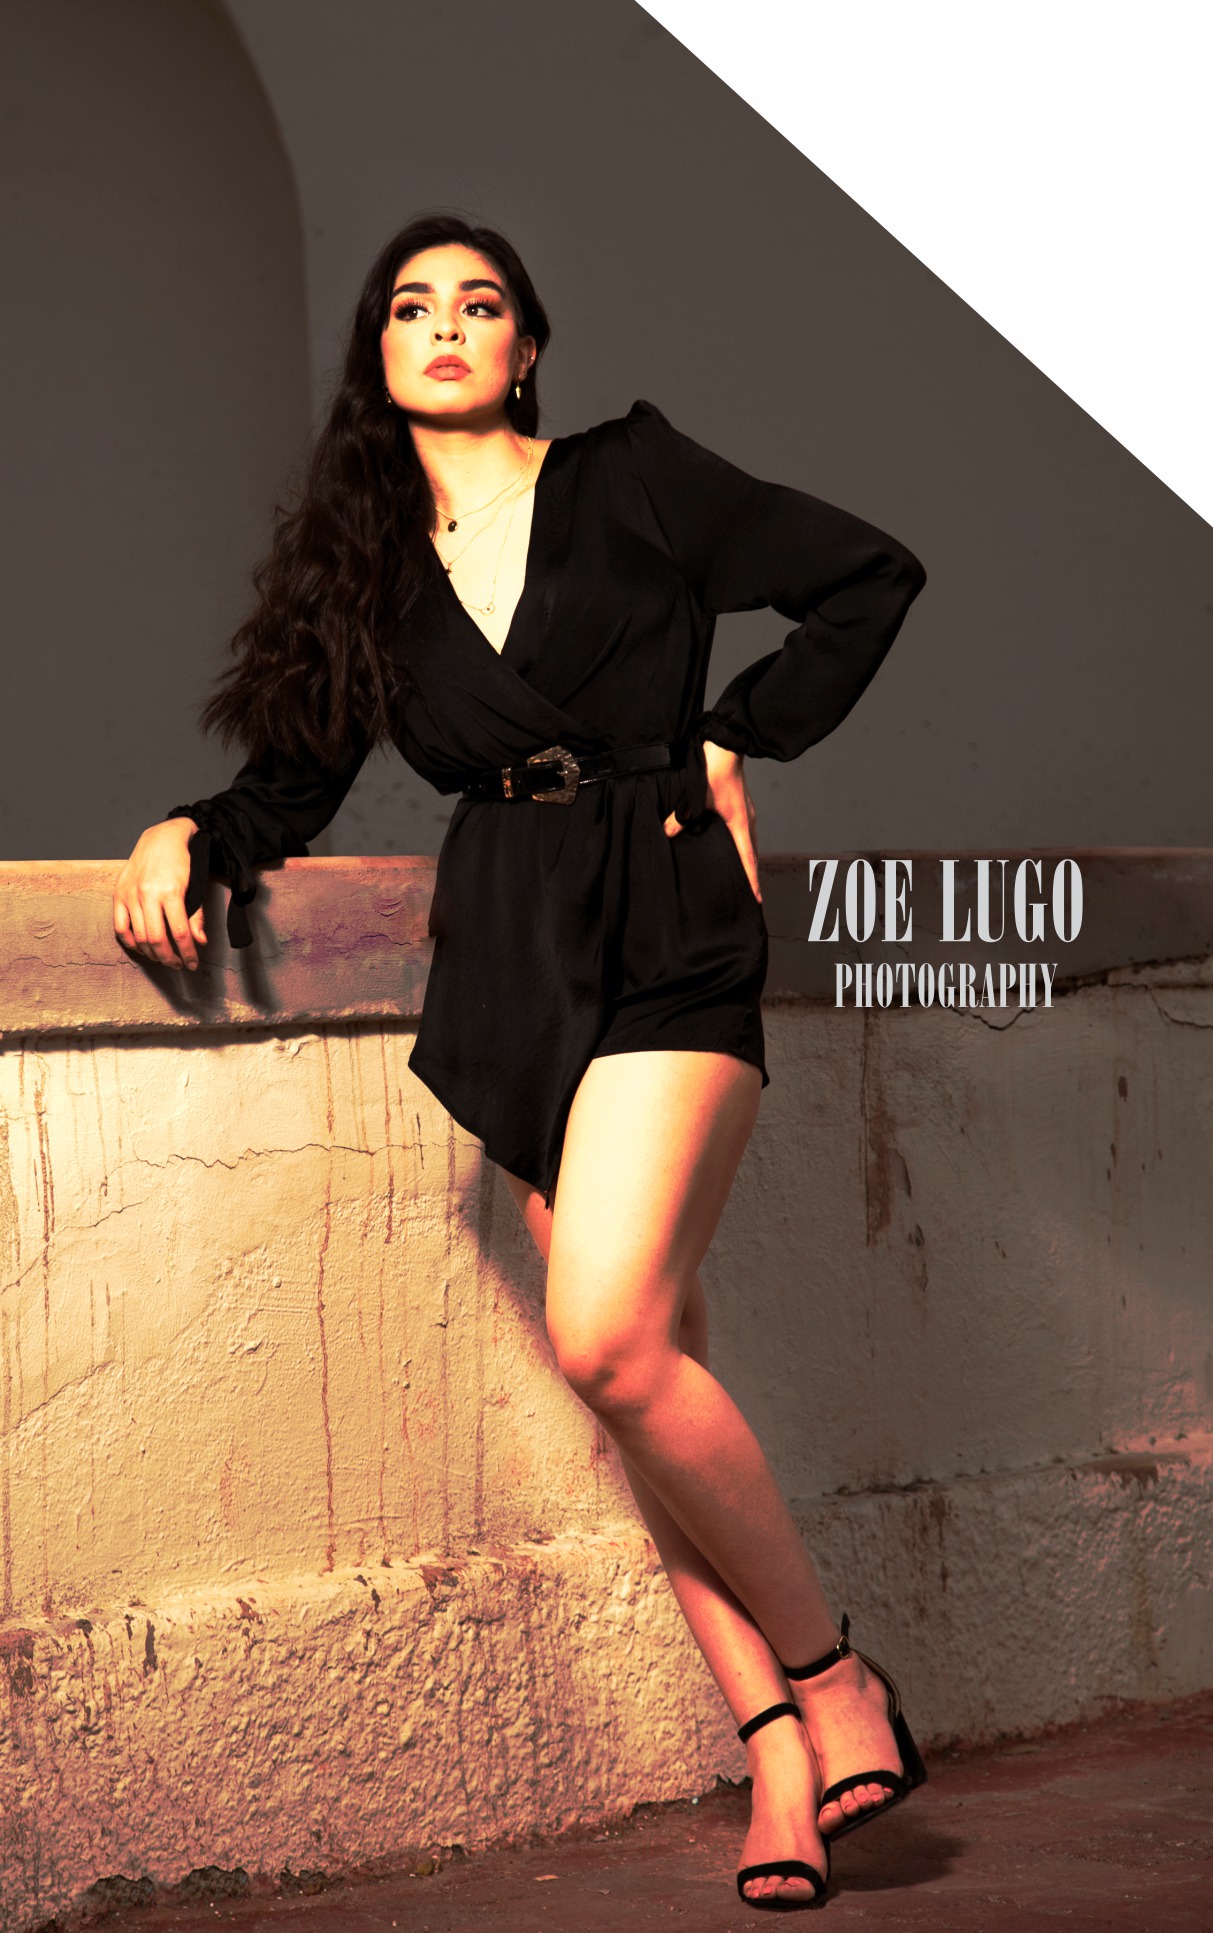 Zoe Lugo